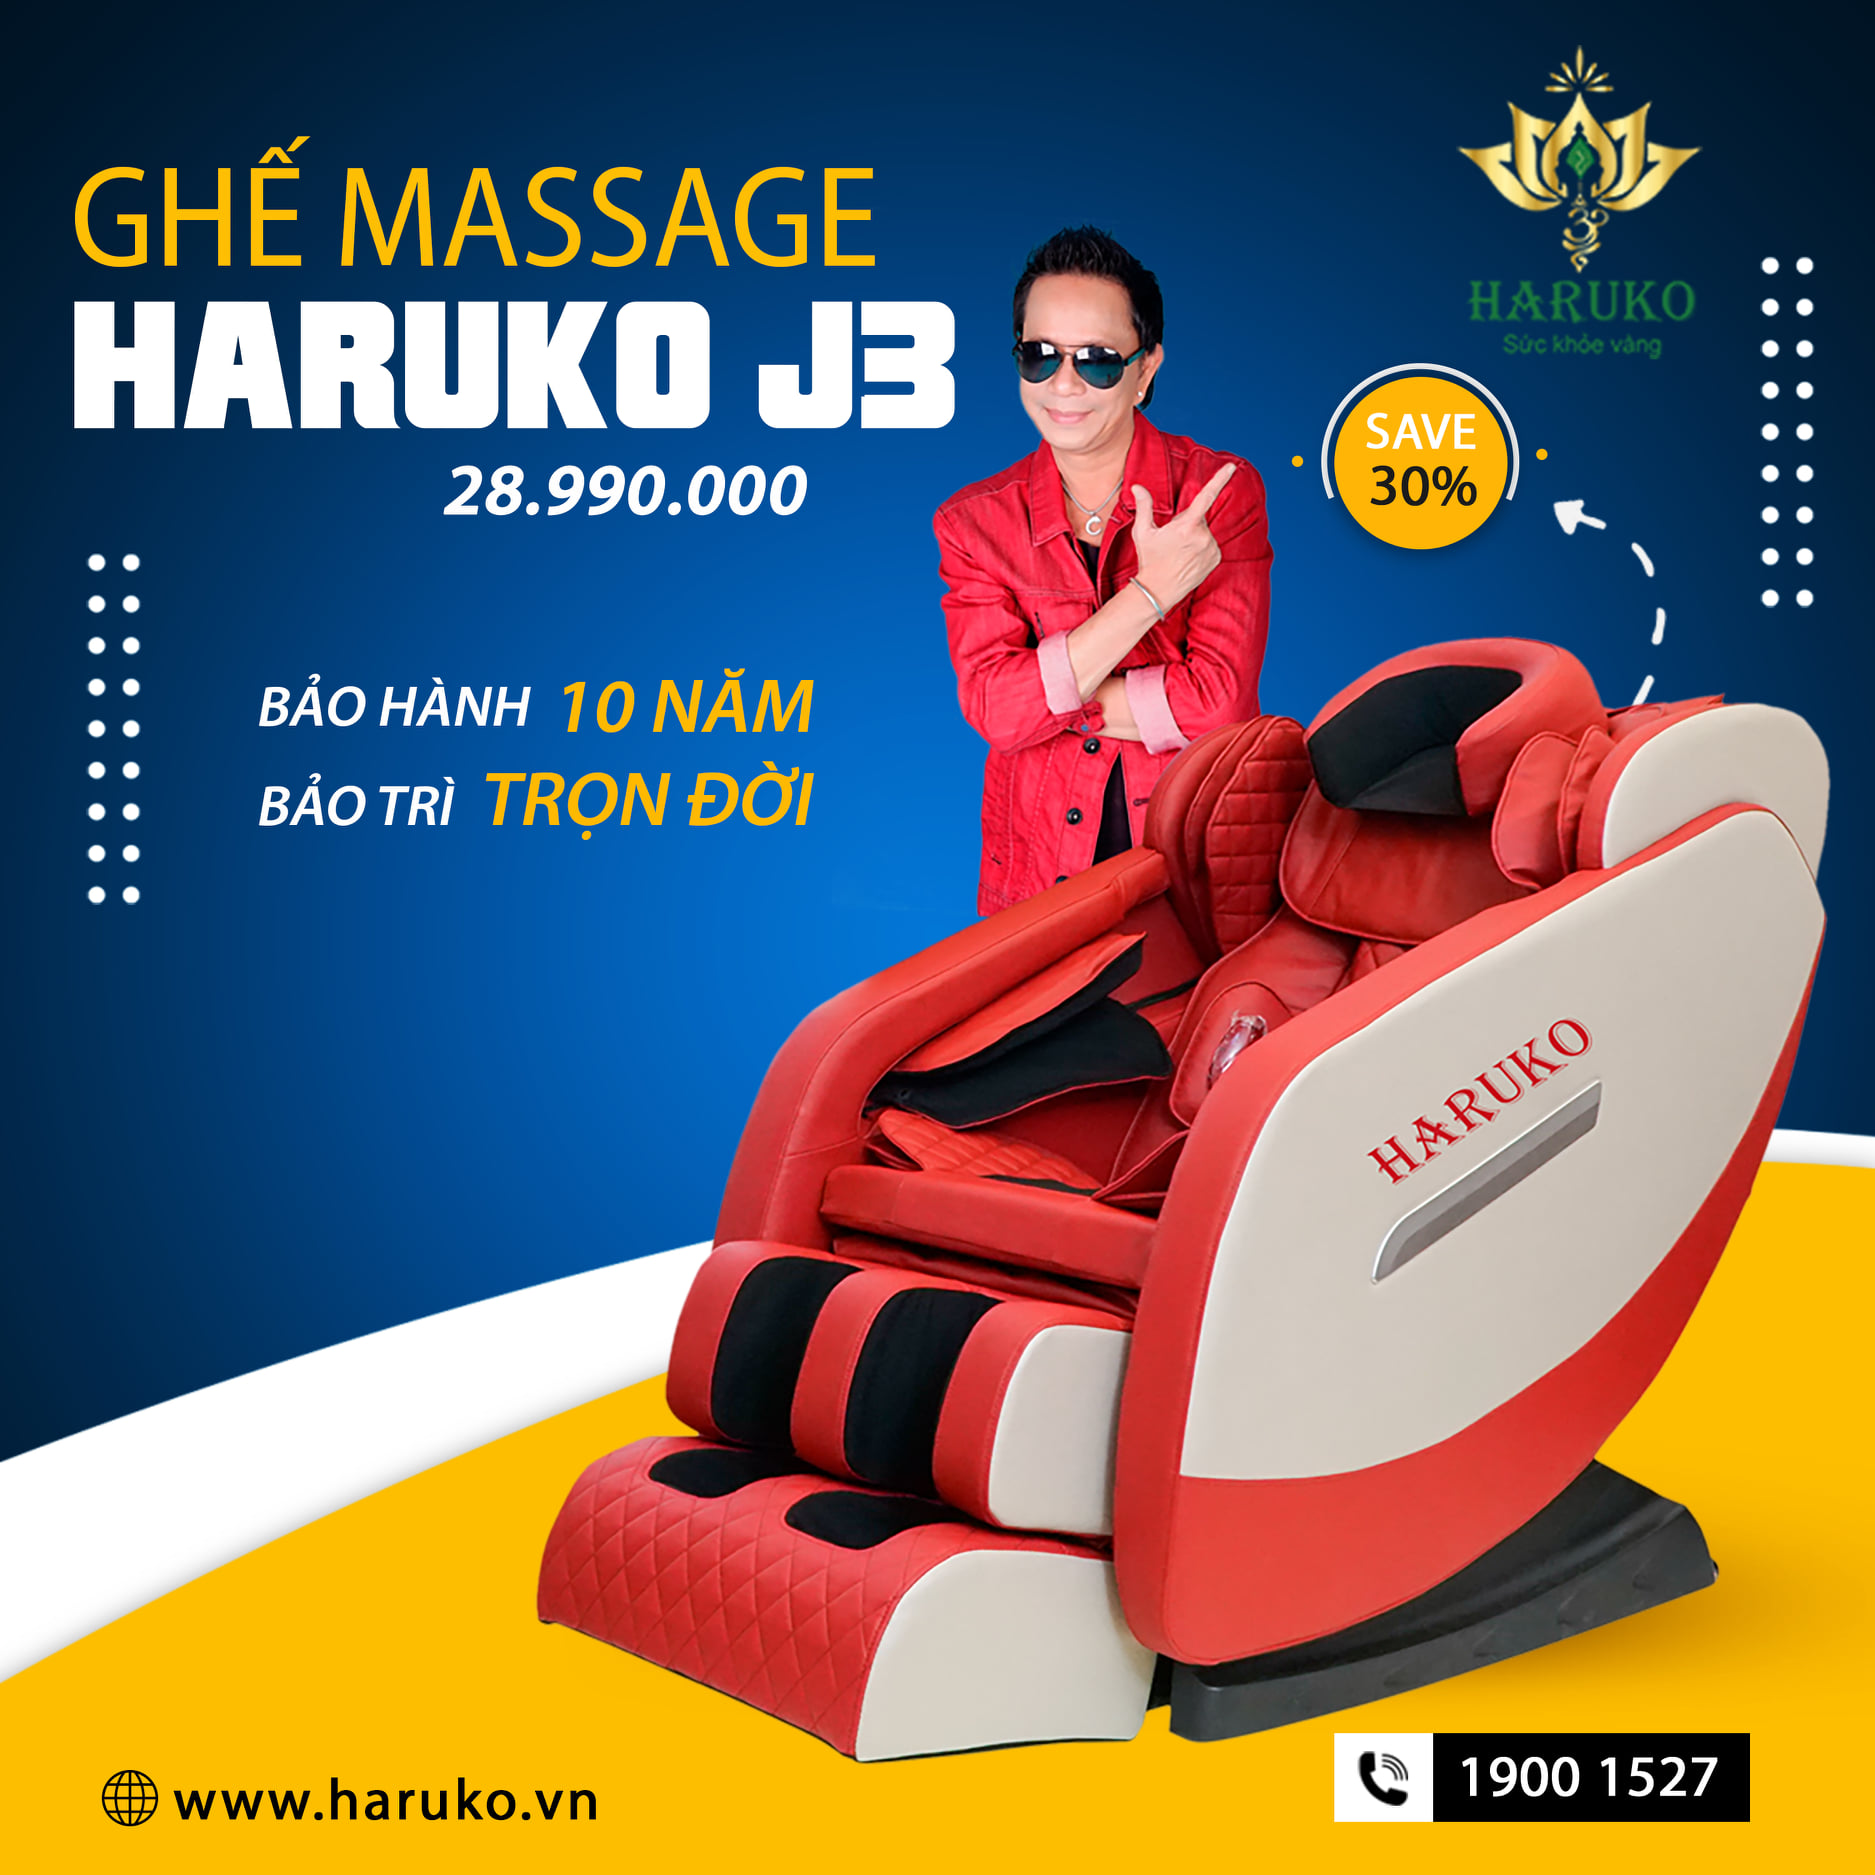 Ghế massage Haruko-J3 được tích hợp hệ thống con lăn thông minh mô phỏng chuyển động như tay người thật